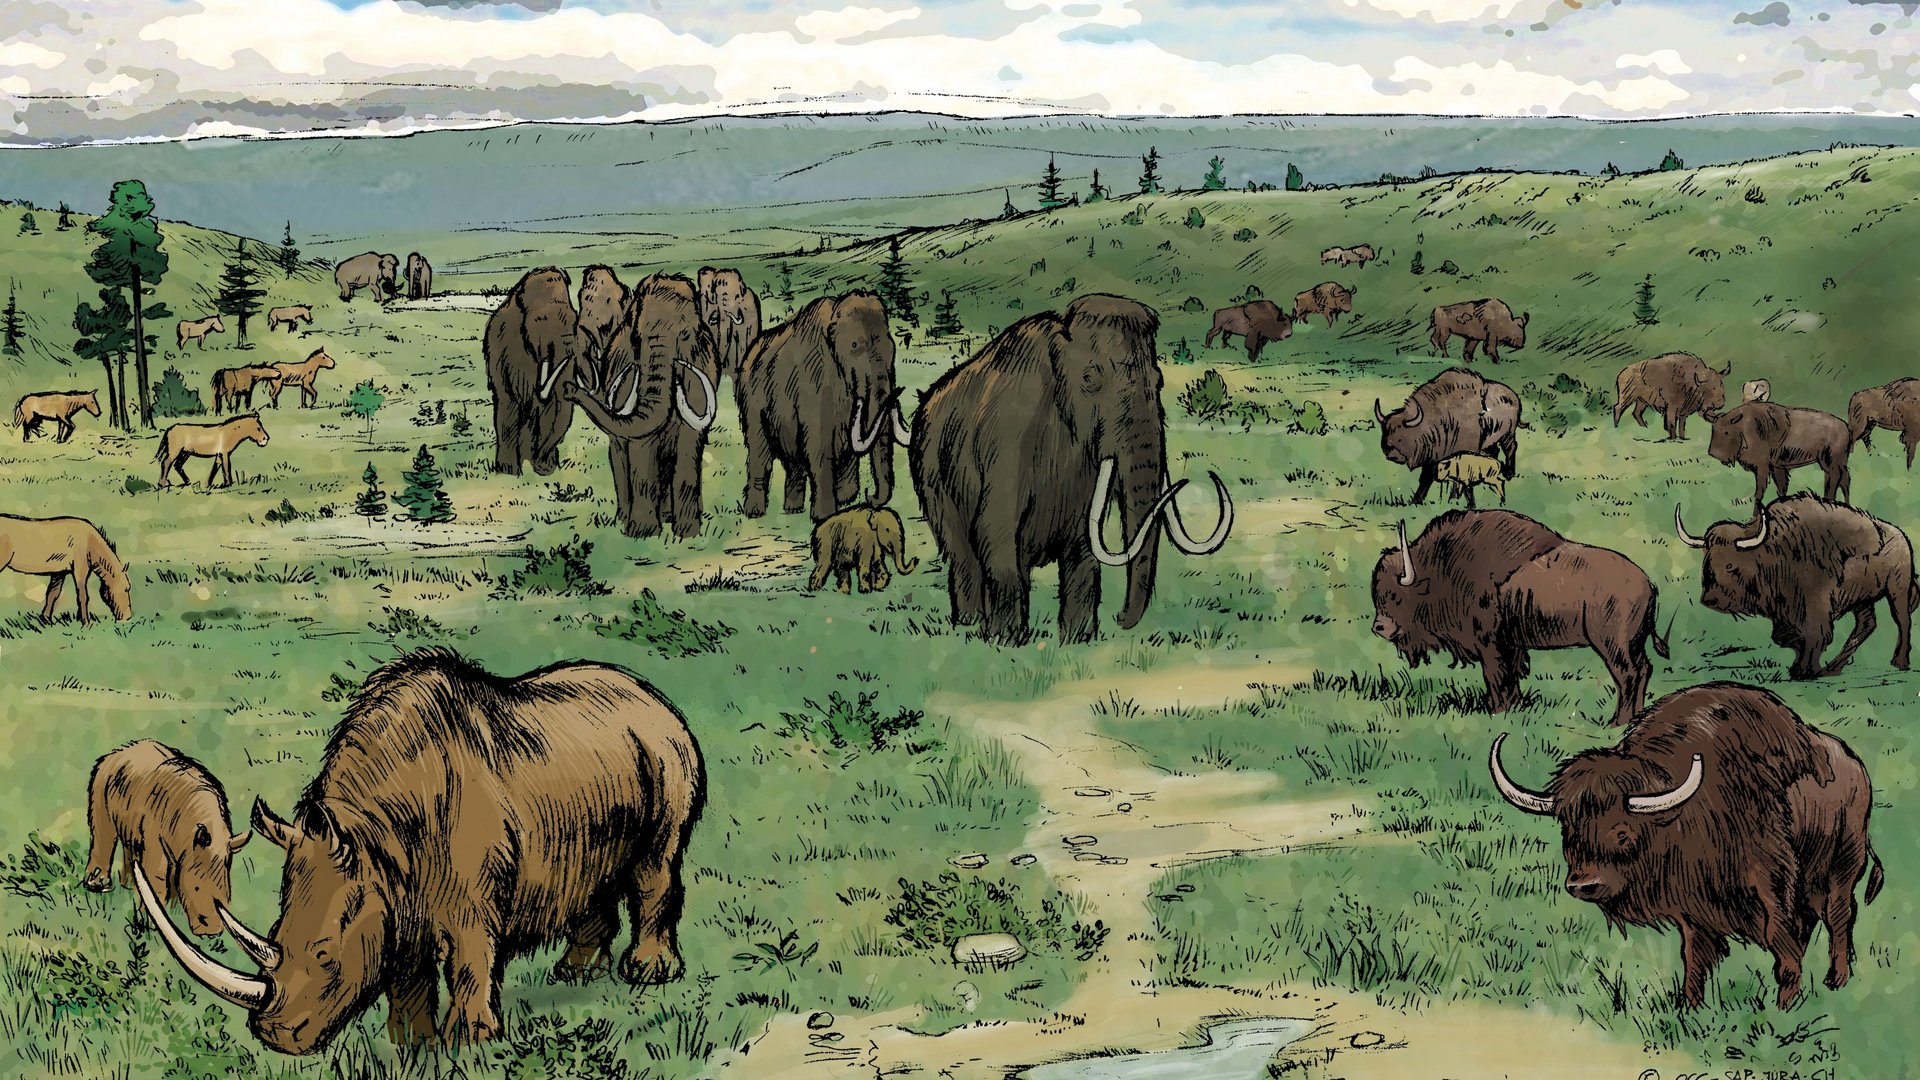 Ricostruzione di un paesaggio del Giura di 35.000 anni fa, con mammut e altre specie di mammiferi che vivevano all'epoca.